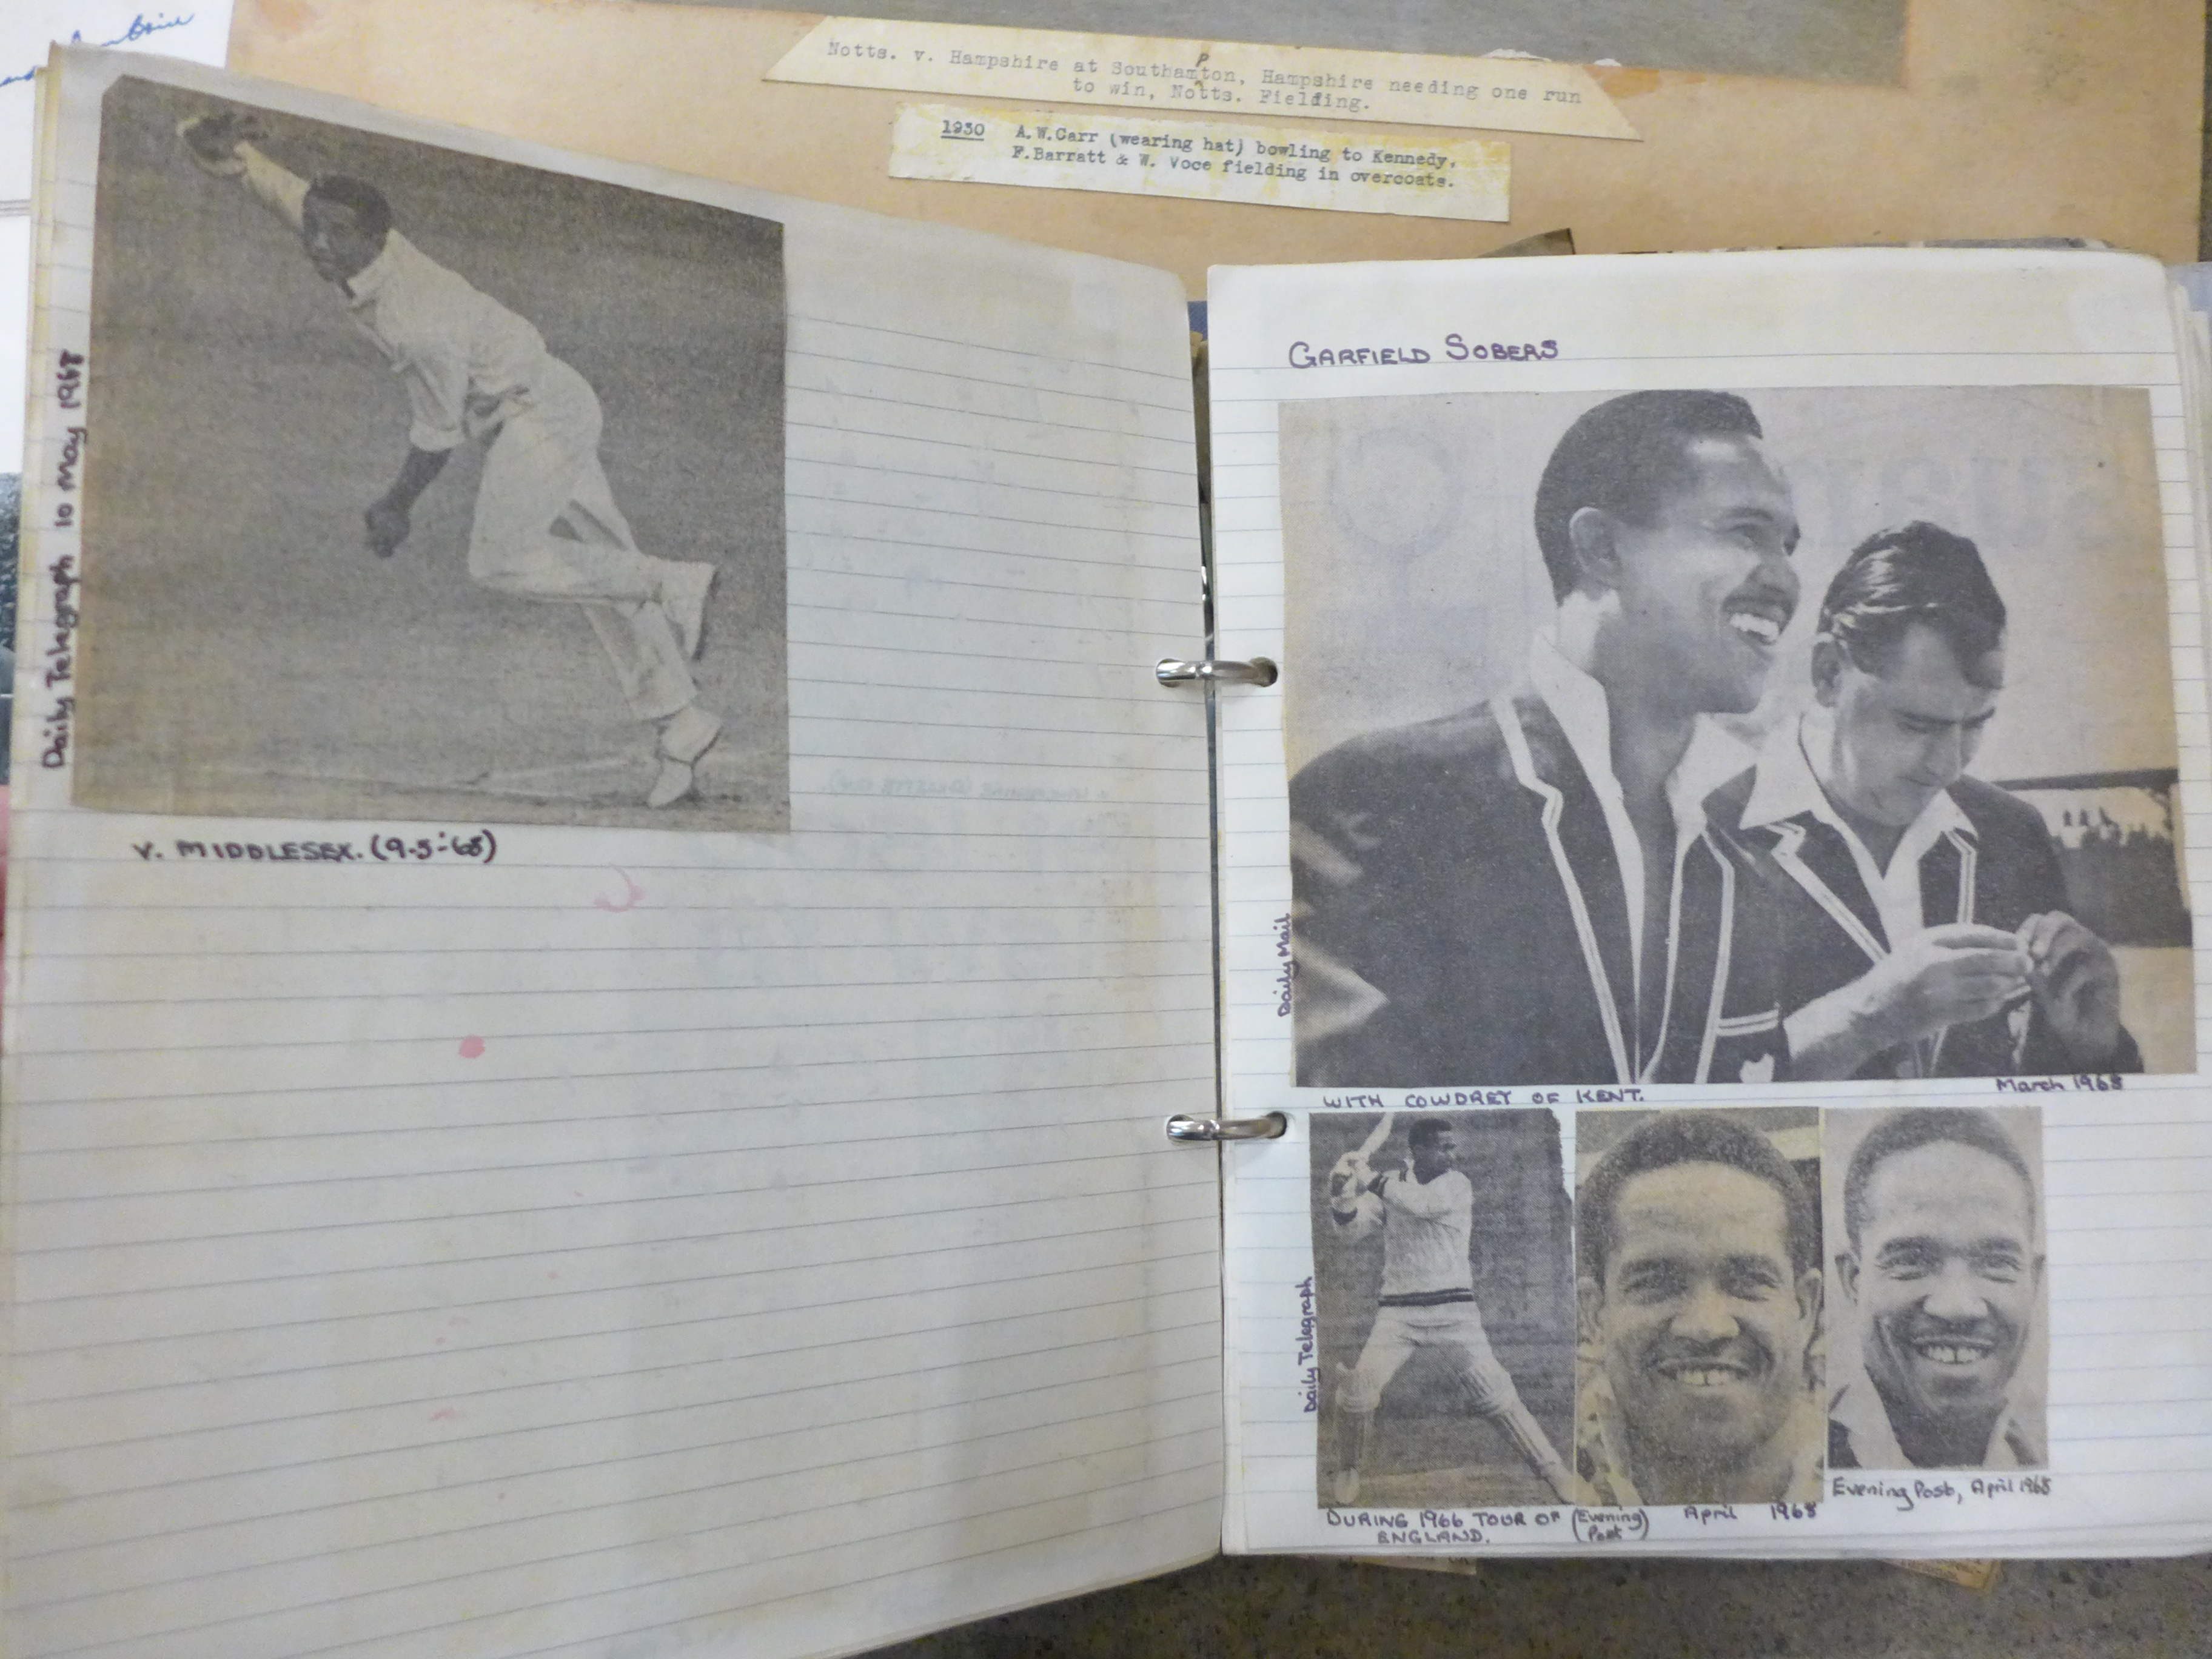 Cricket ephemera and scrap albums with autographs including Larwood, Boycott, Subba Row - Image 16 of 19